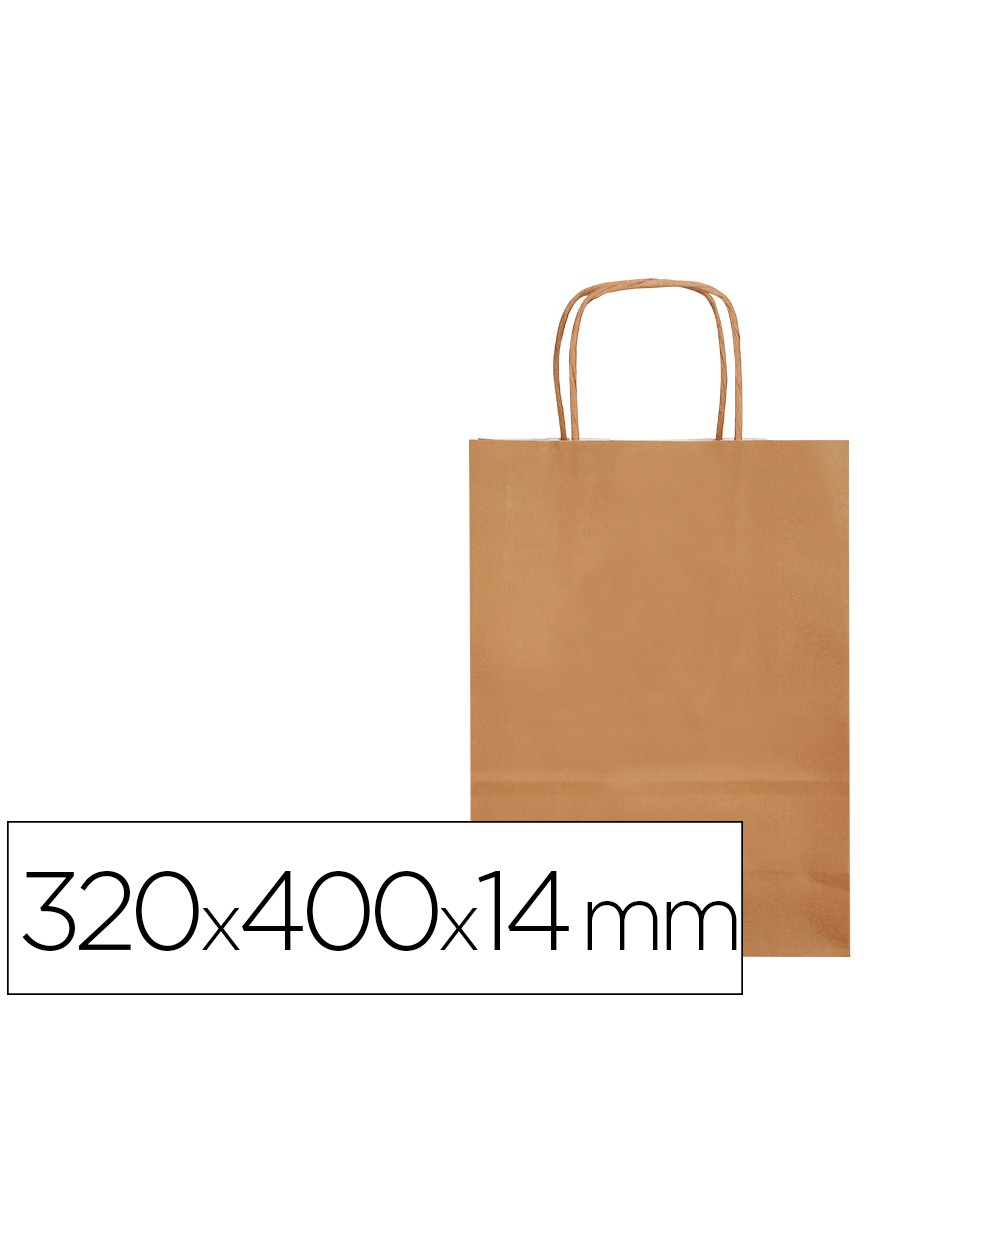 Bolsa papel q connect celulosa natural liso l con asa retorcida 320x400x14 mm